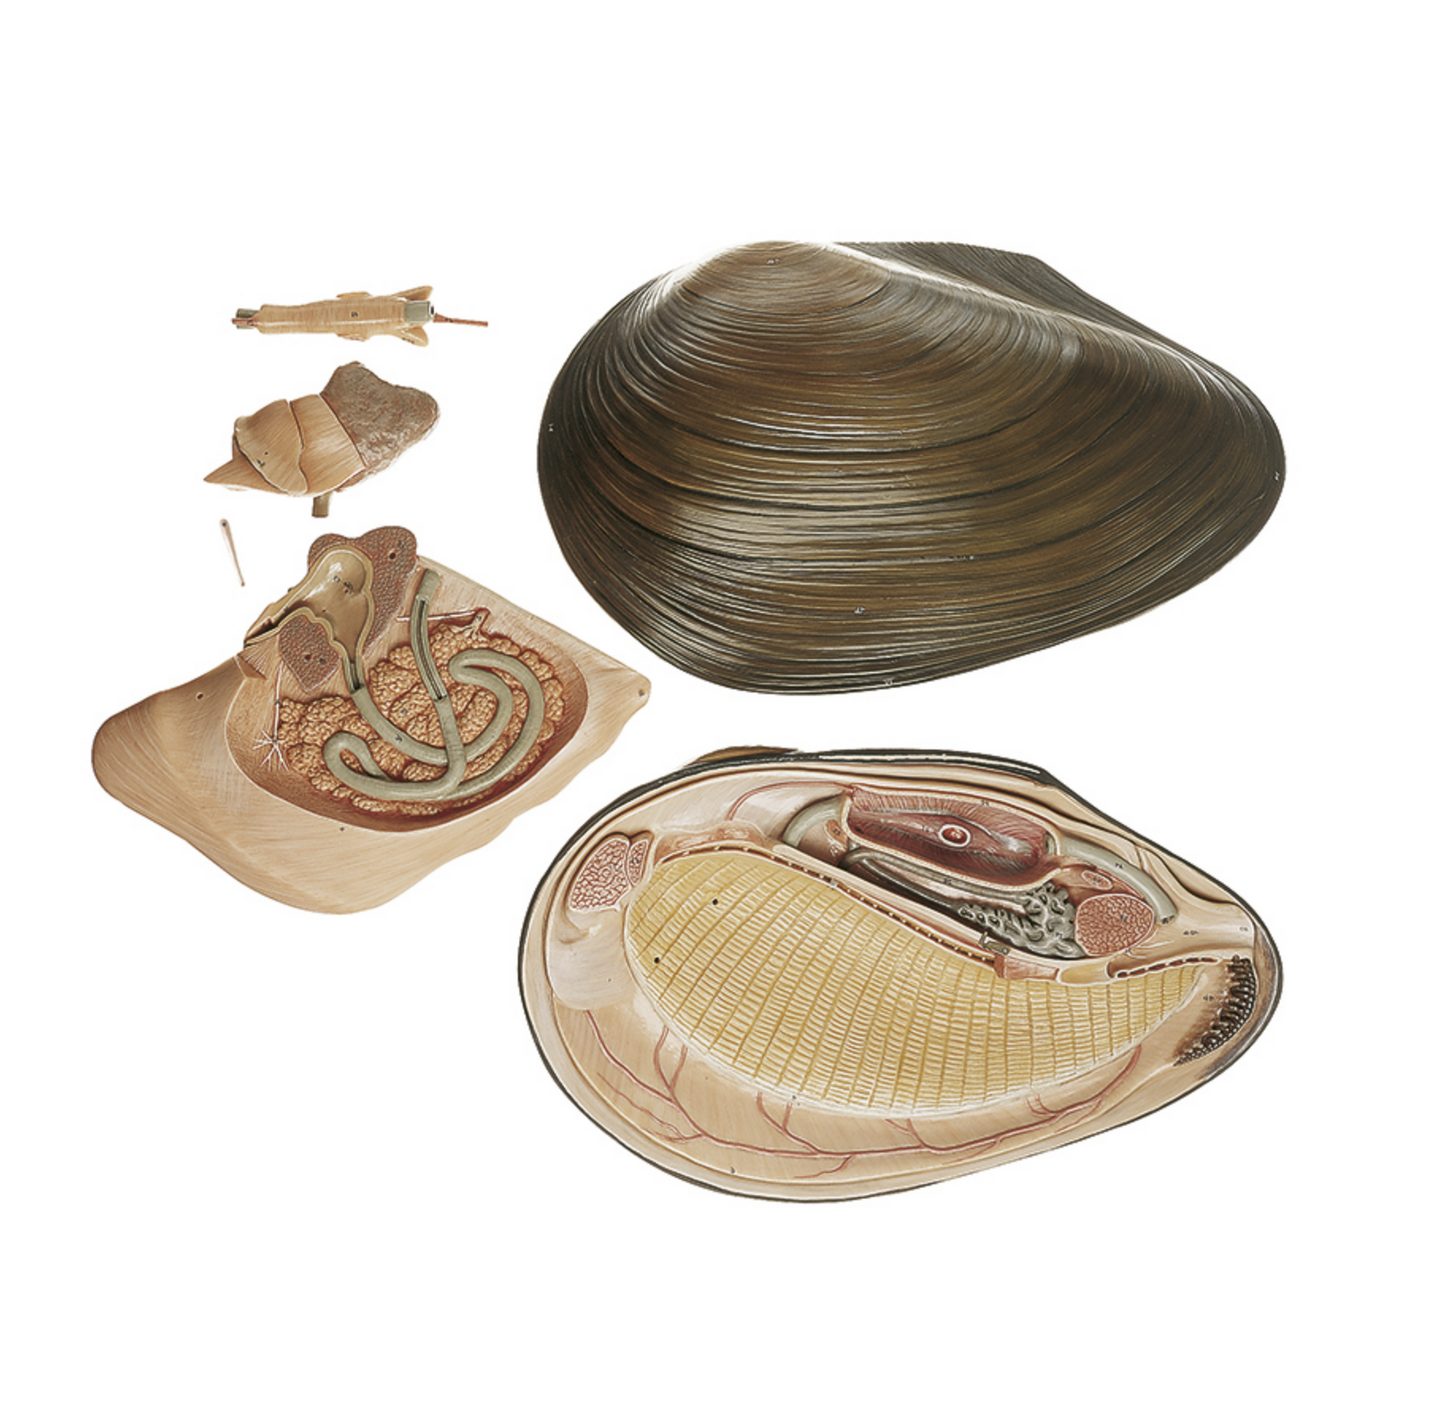 Modell av en mussla (Anodonta cygnea) i högsta kvalitet och förstorad. Kan delas upp i 5 delar